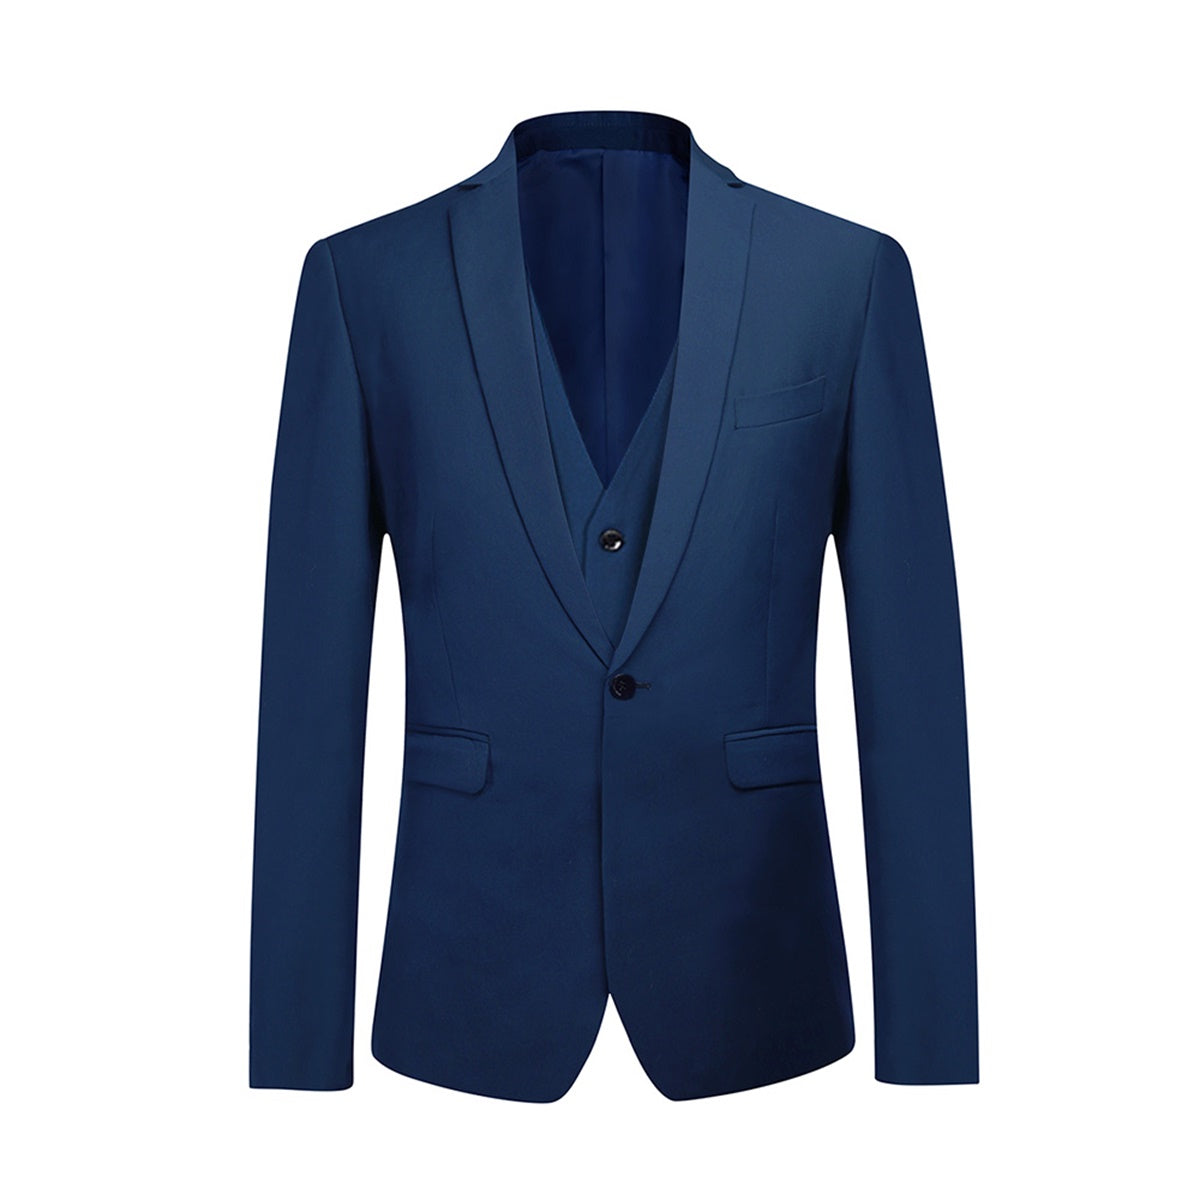 3-Piece One Button Formal Suit Classic Suit Blue